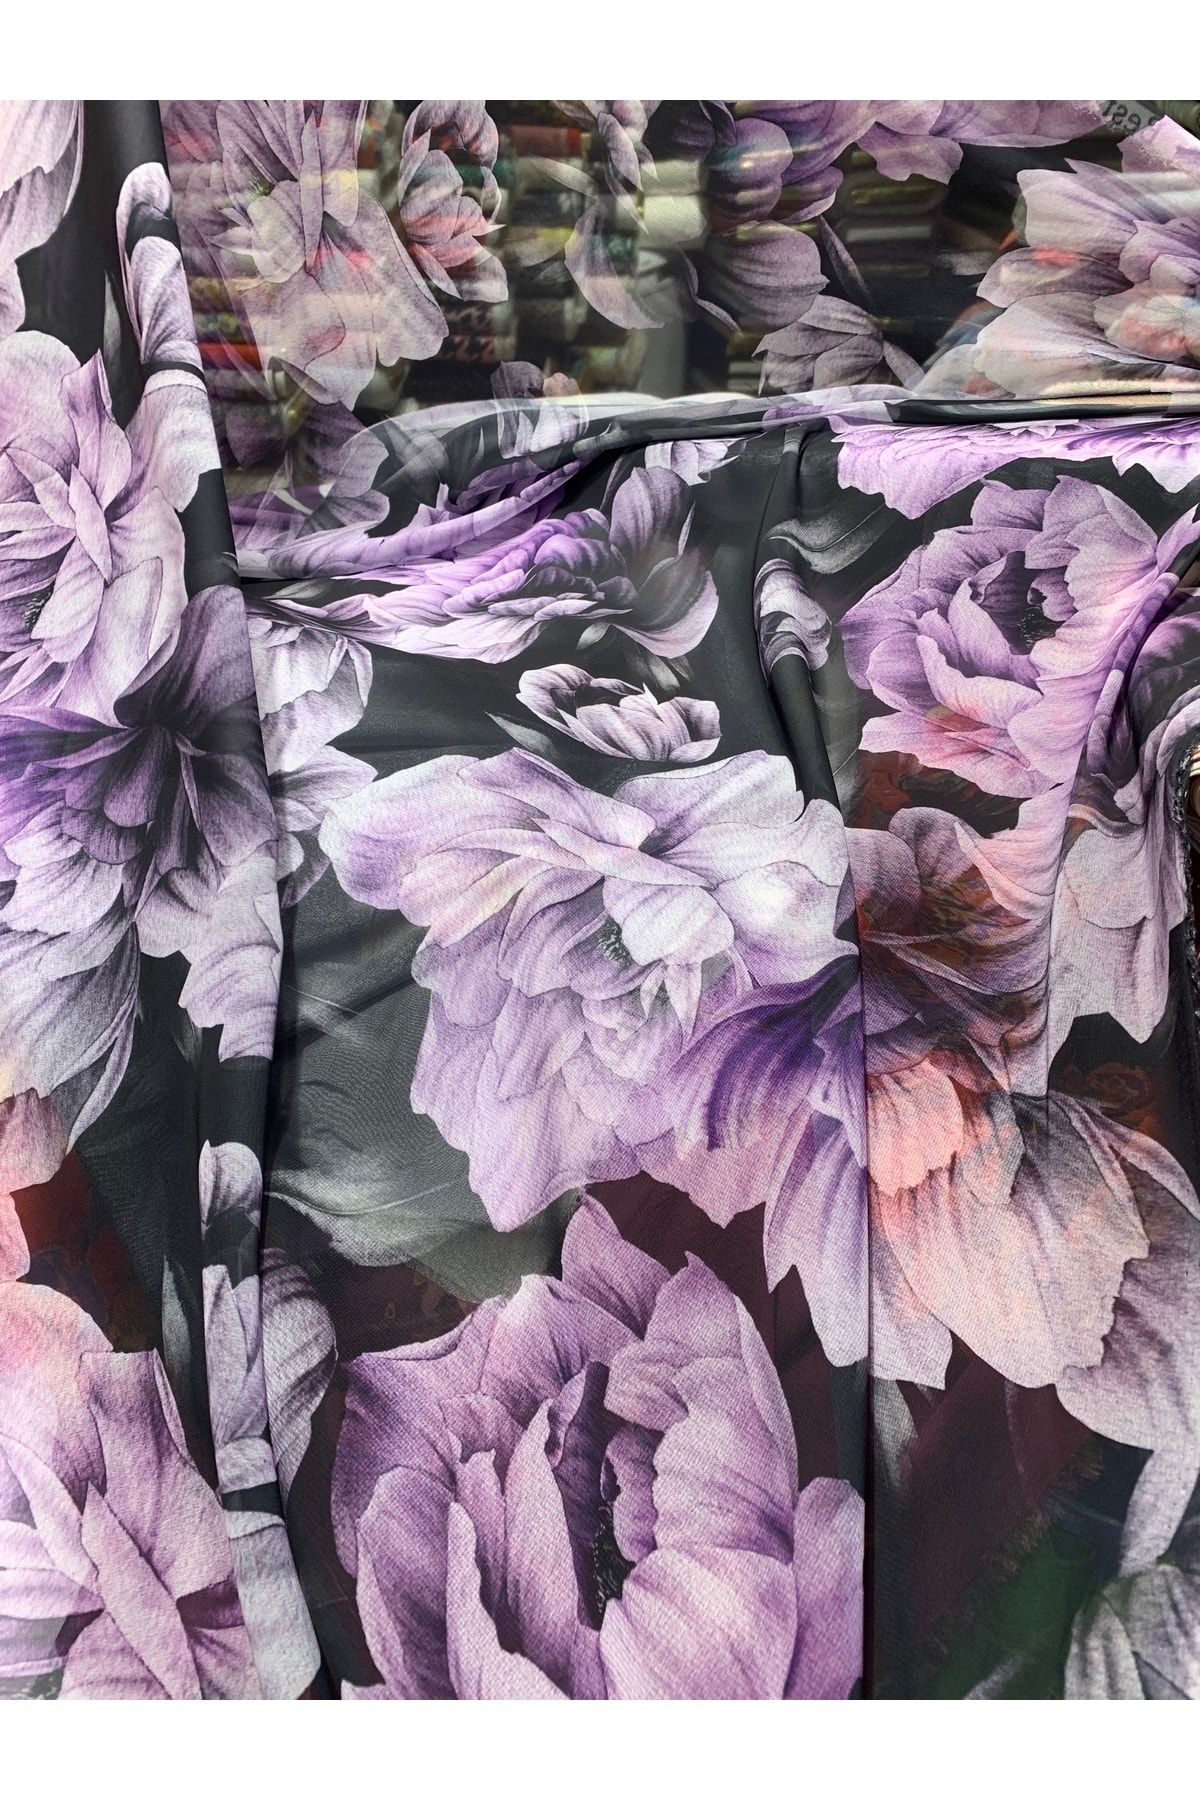 Nadirzade Kumaşçılık Özel Tasarım Ipek Şifon Elbise Kumaşı / (150 Cm Eninde)